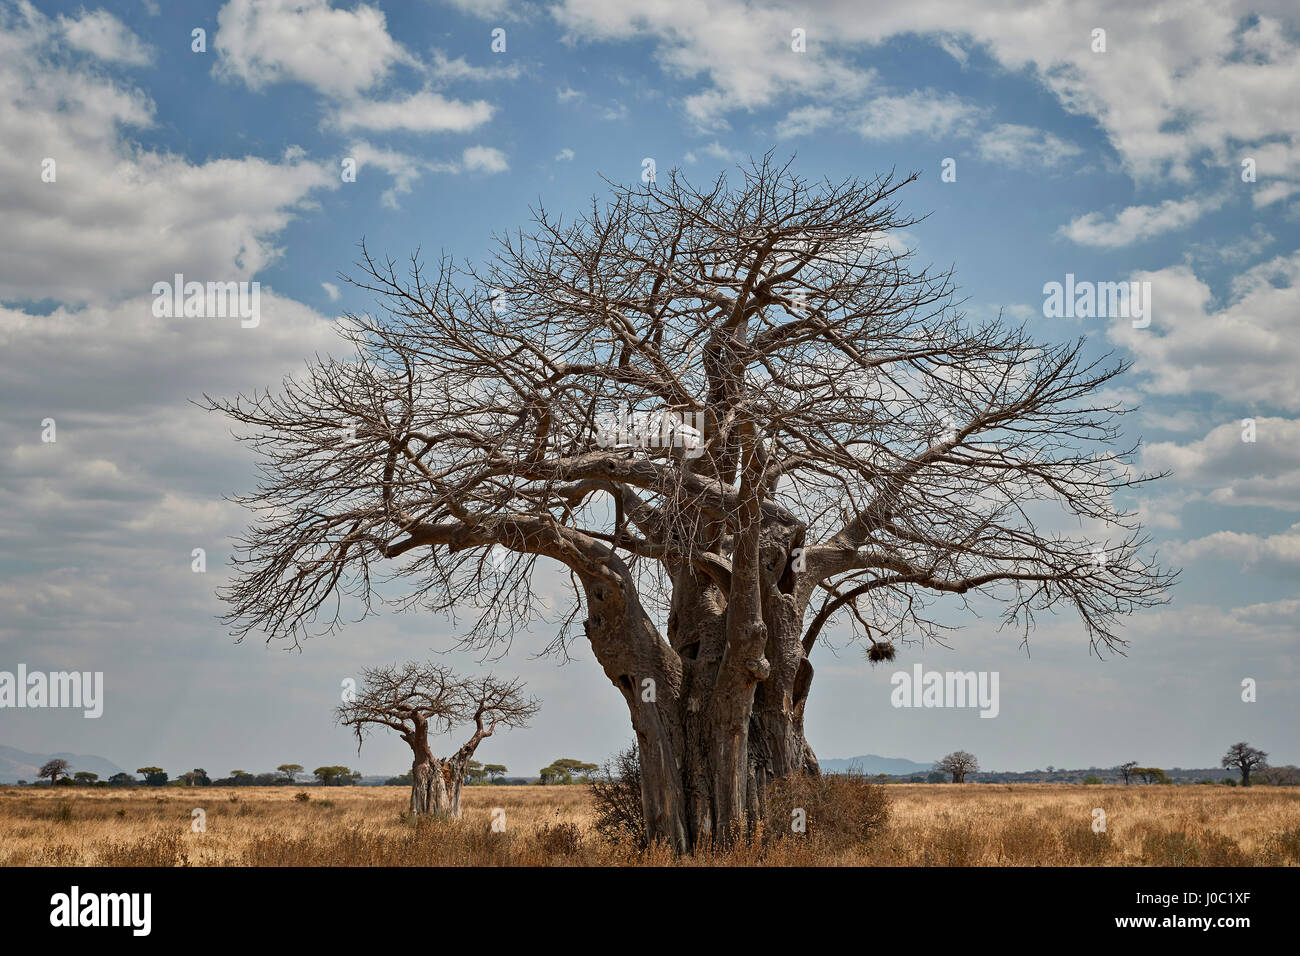 Arbre de baobab, le Ruaha National Park, Tanzania Banque D'Images